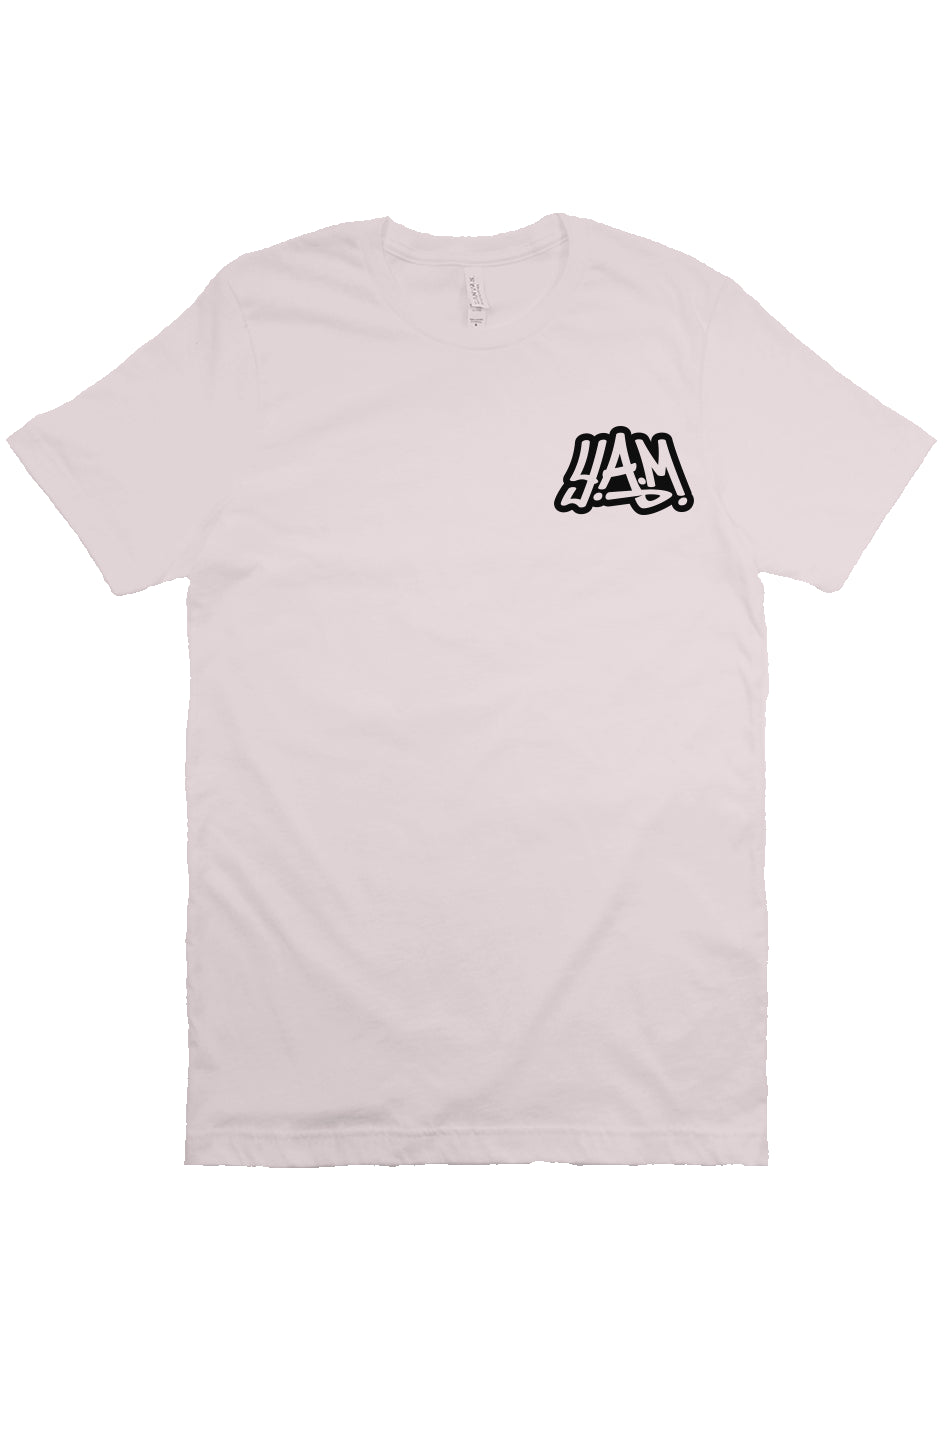 Unisex Soft Pink T-Shirt Back Design